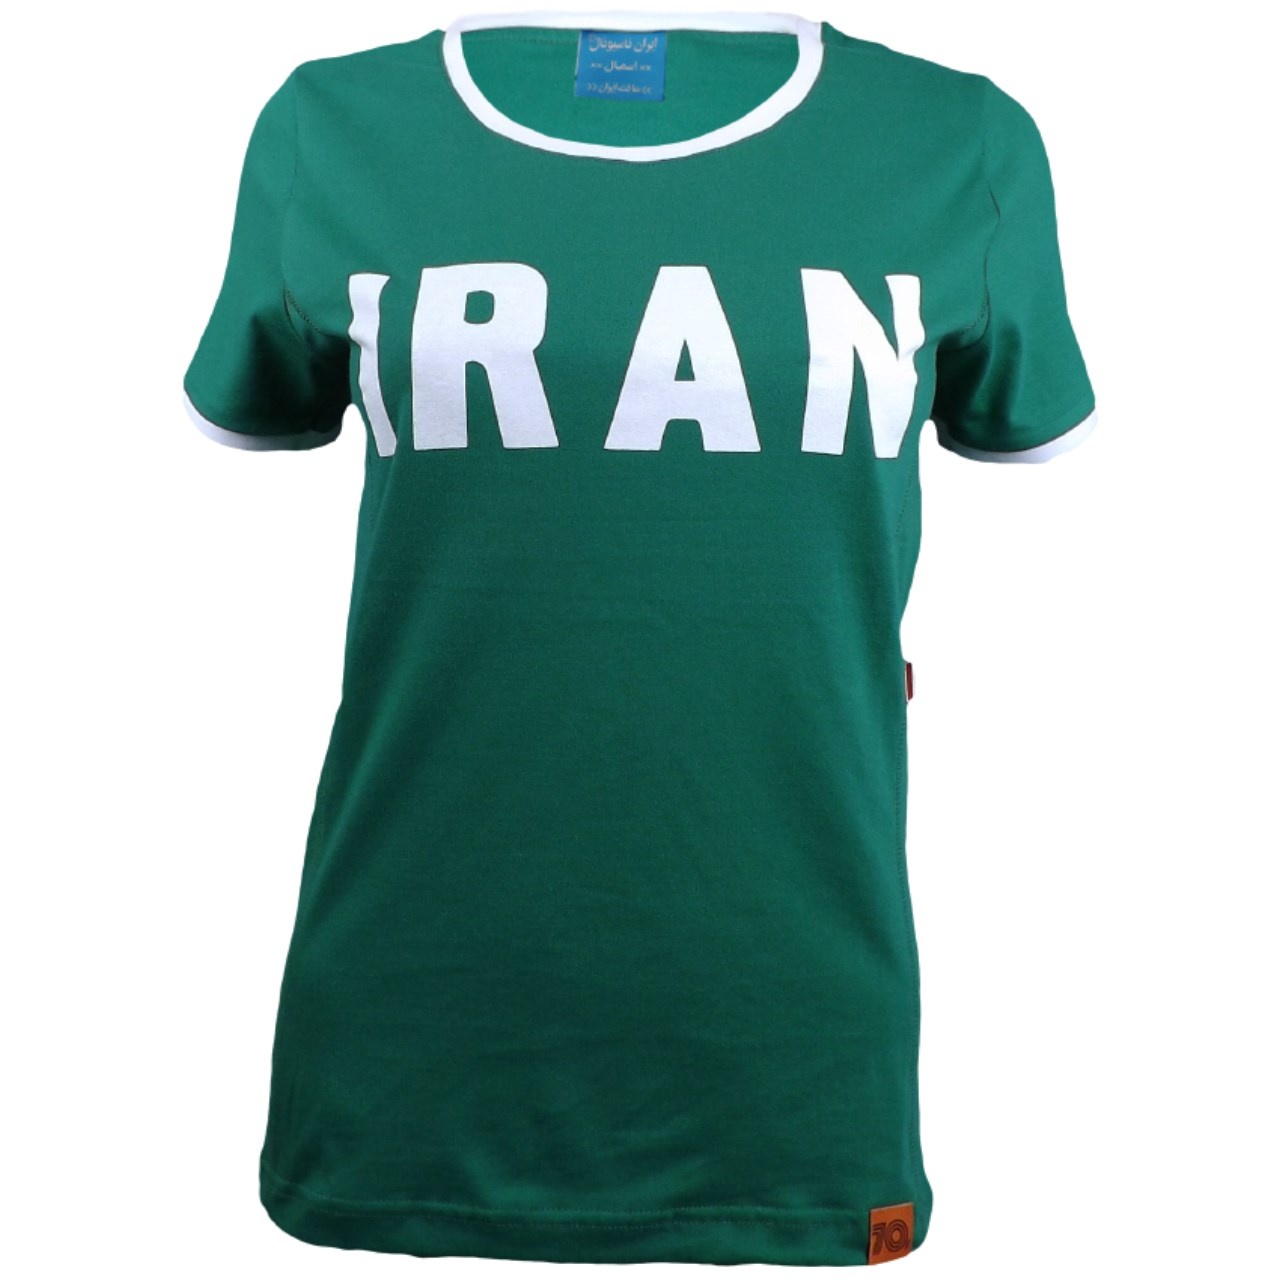 تی شرت ورزشی زنانه ایران ناسیونال کد 220